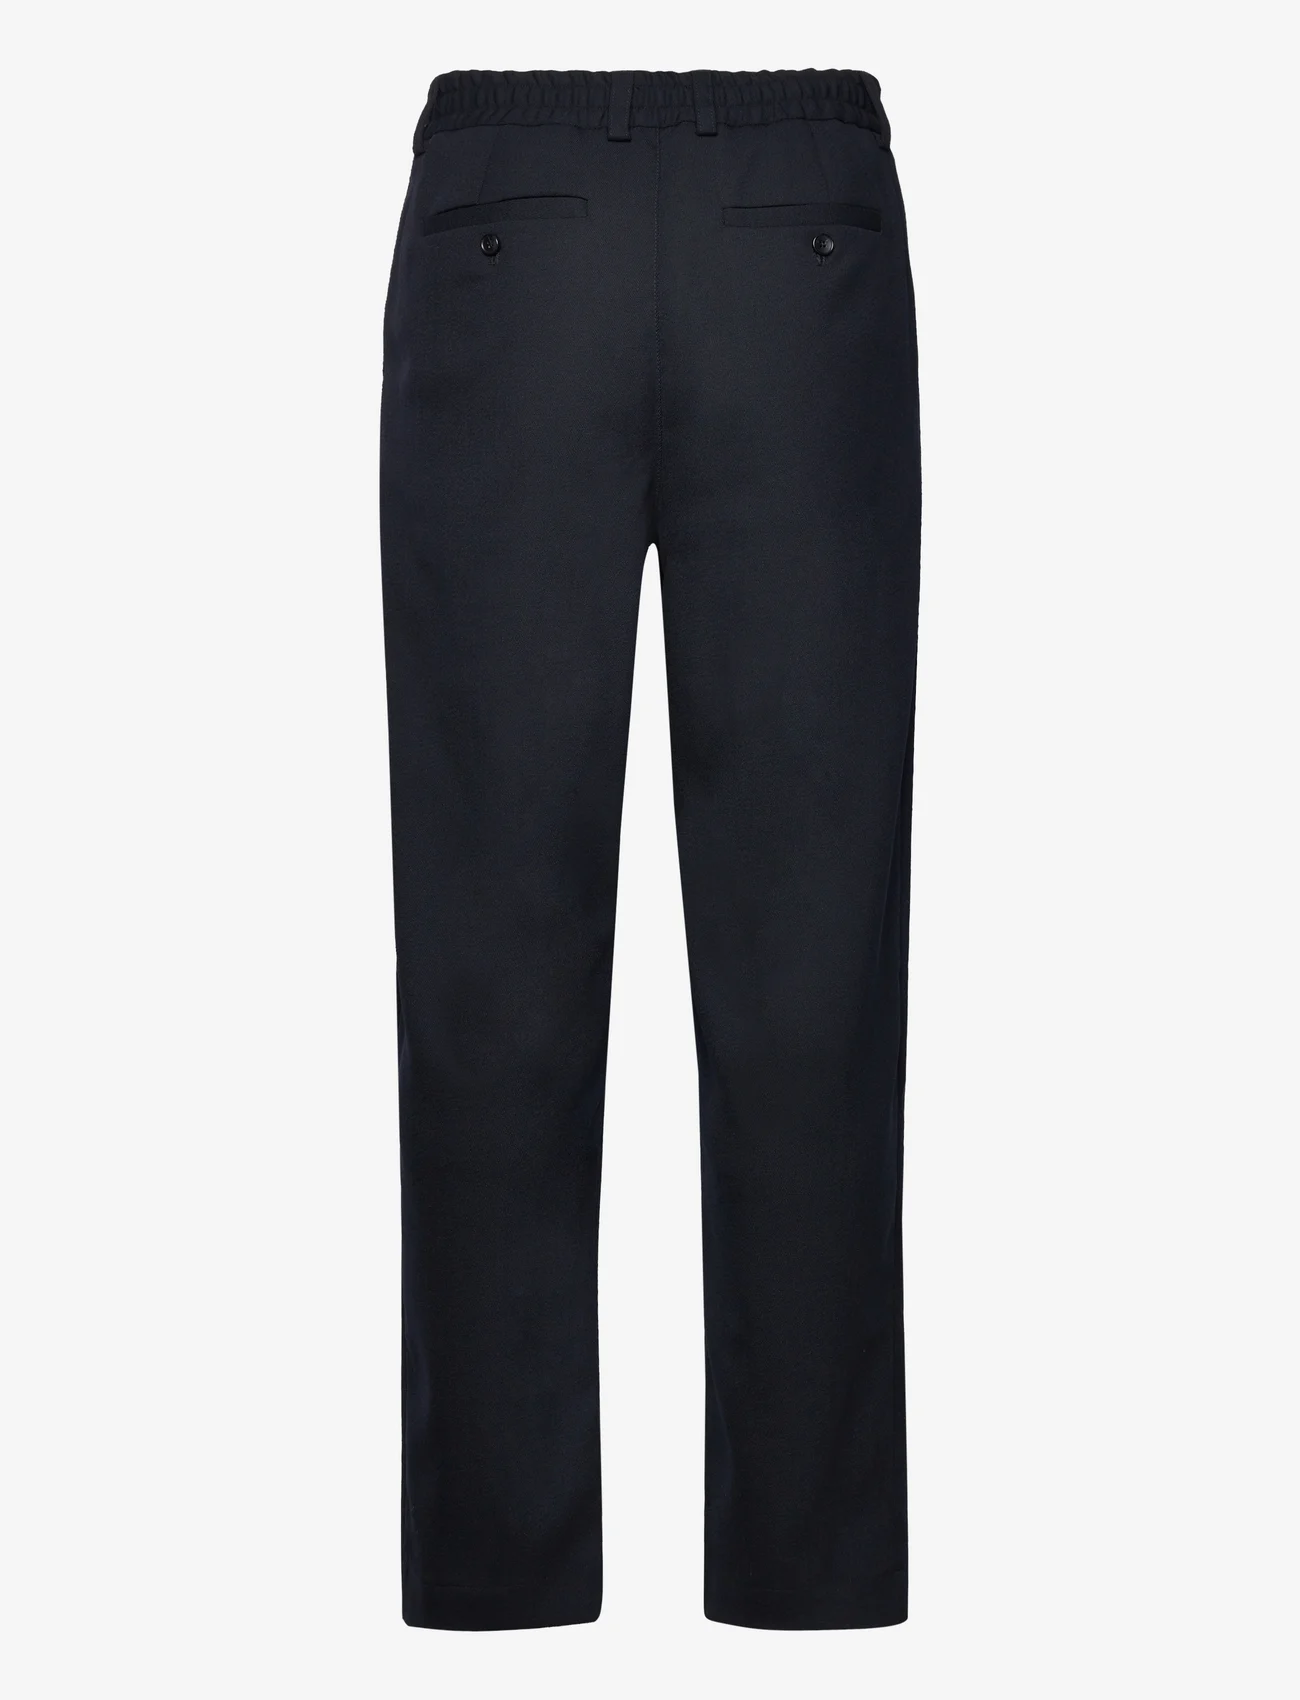 Libertine-Libertine - Agency - formal trousers - dark navy - 1